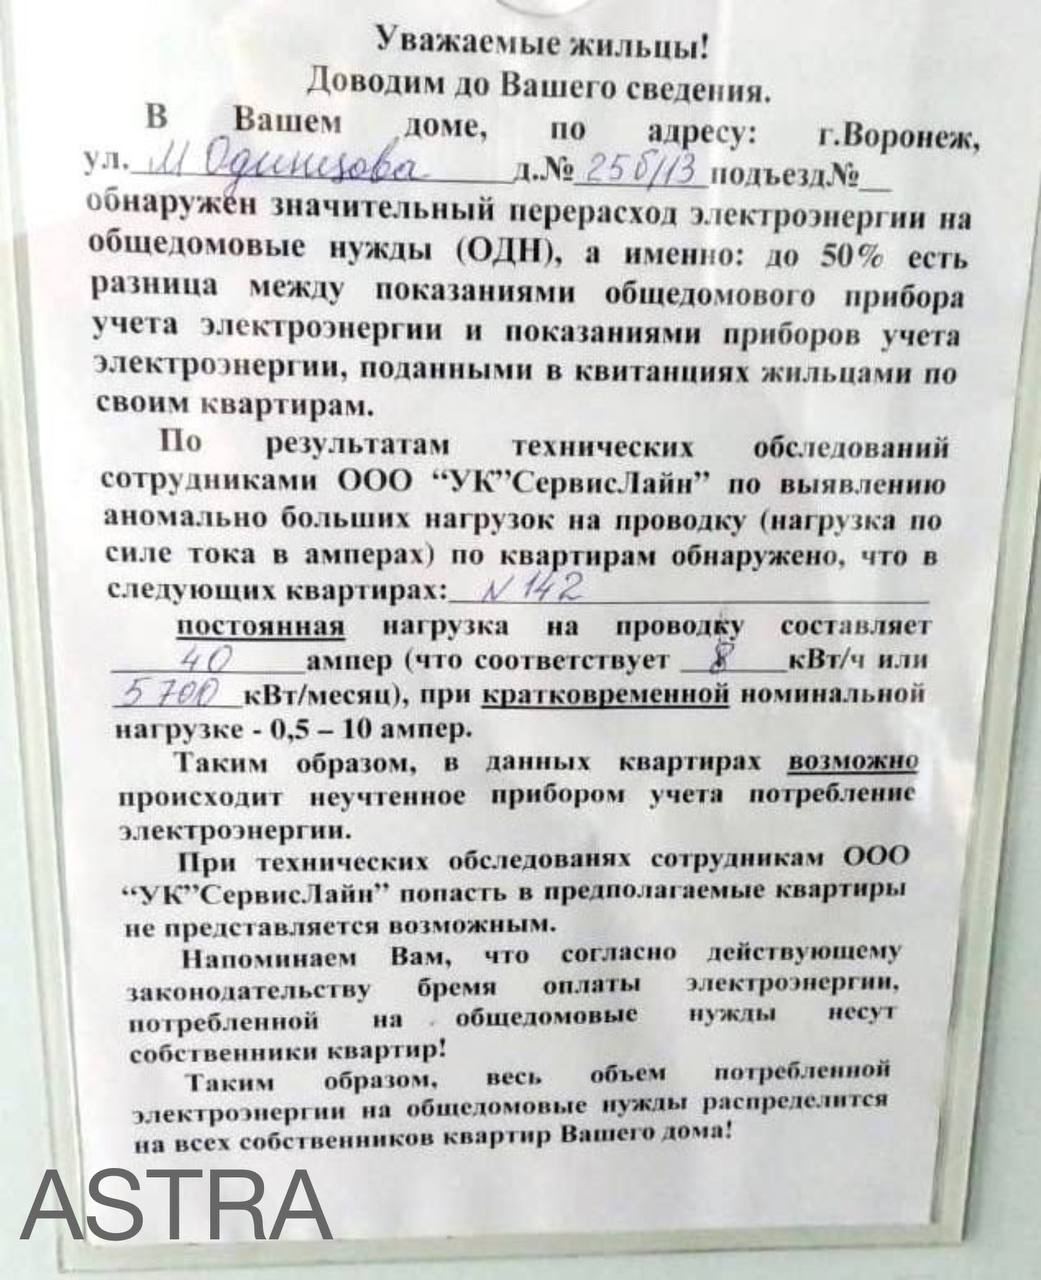 ЖК Лазурный в Воронеже жильцам предложили оплатить долги майнеров за электроэнергию